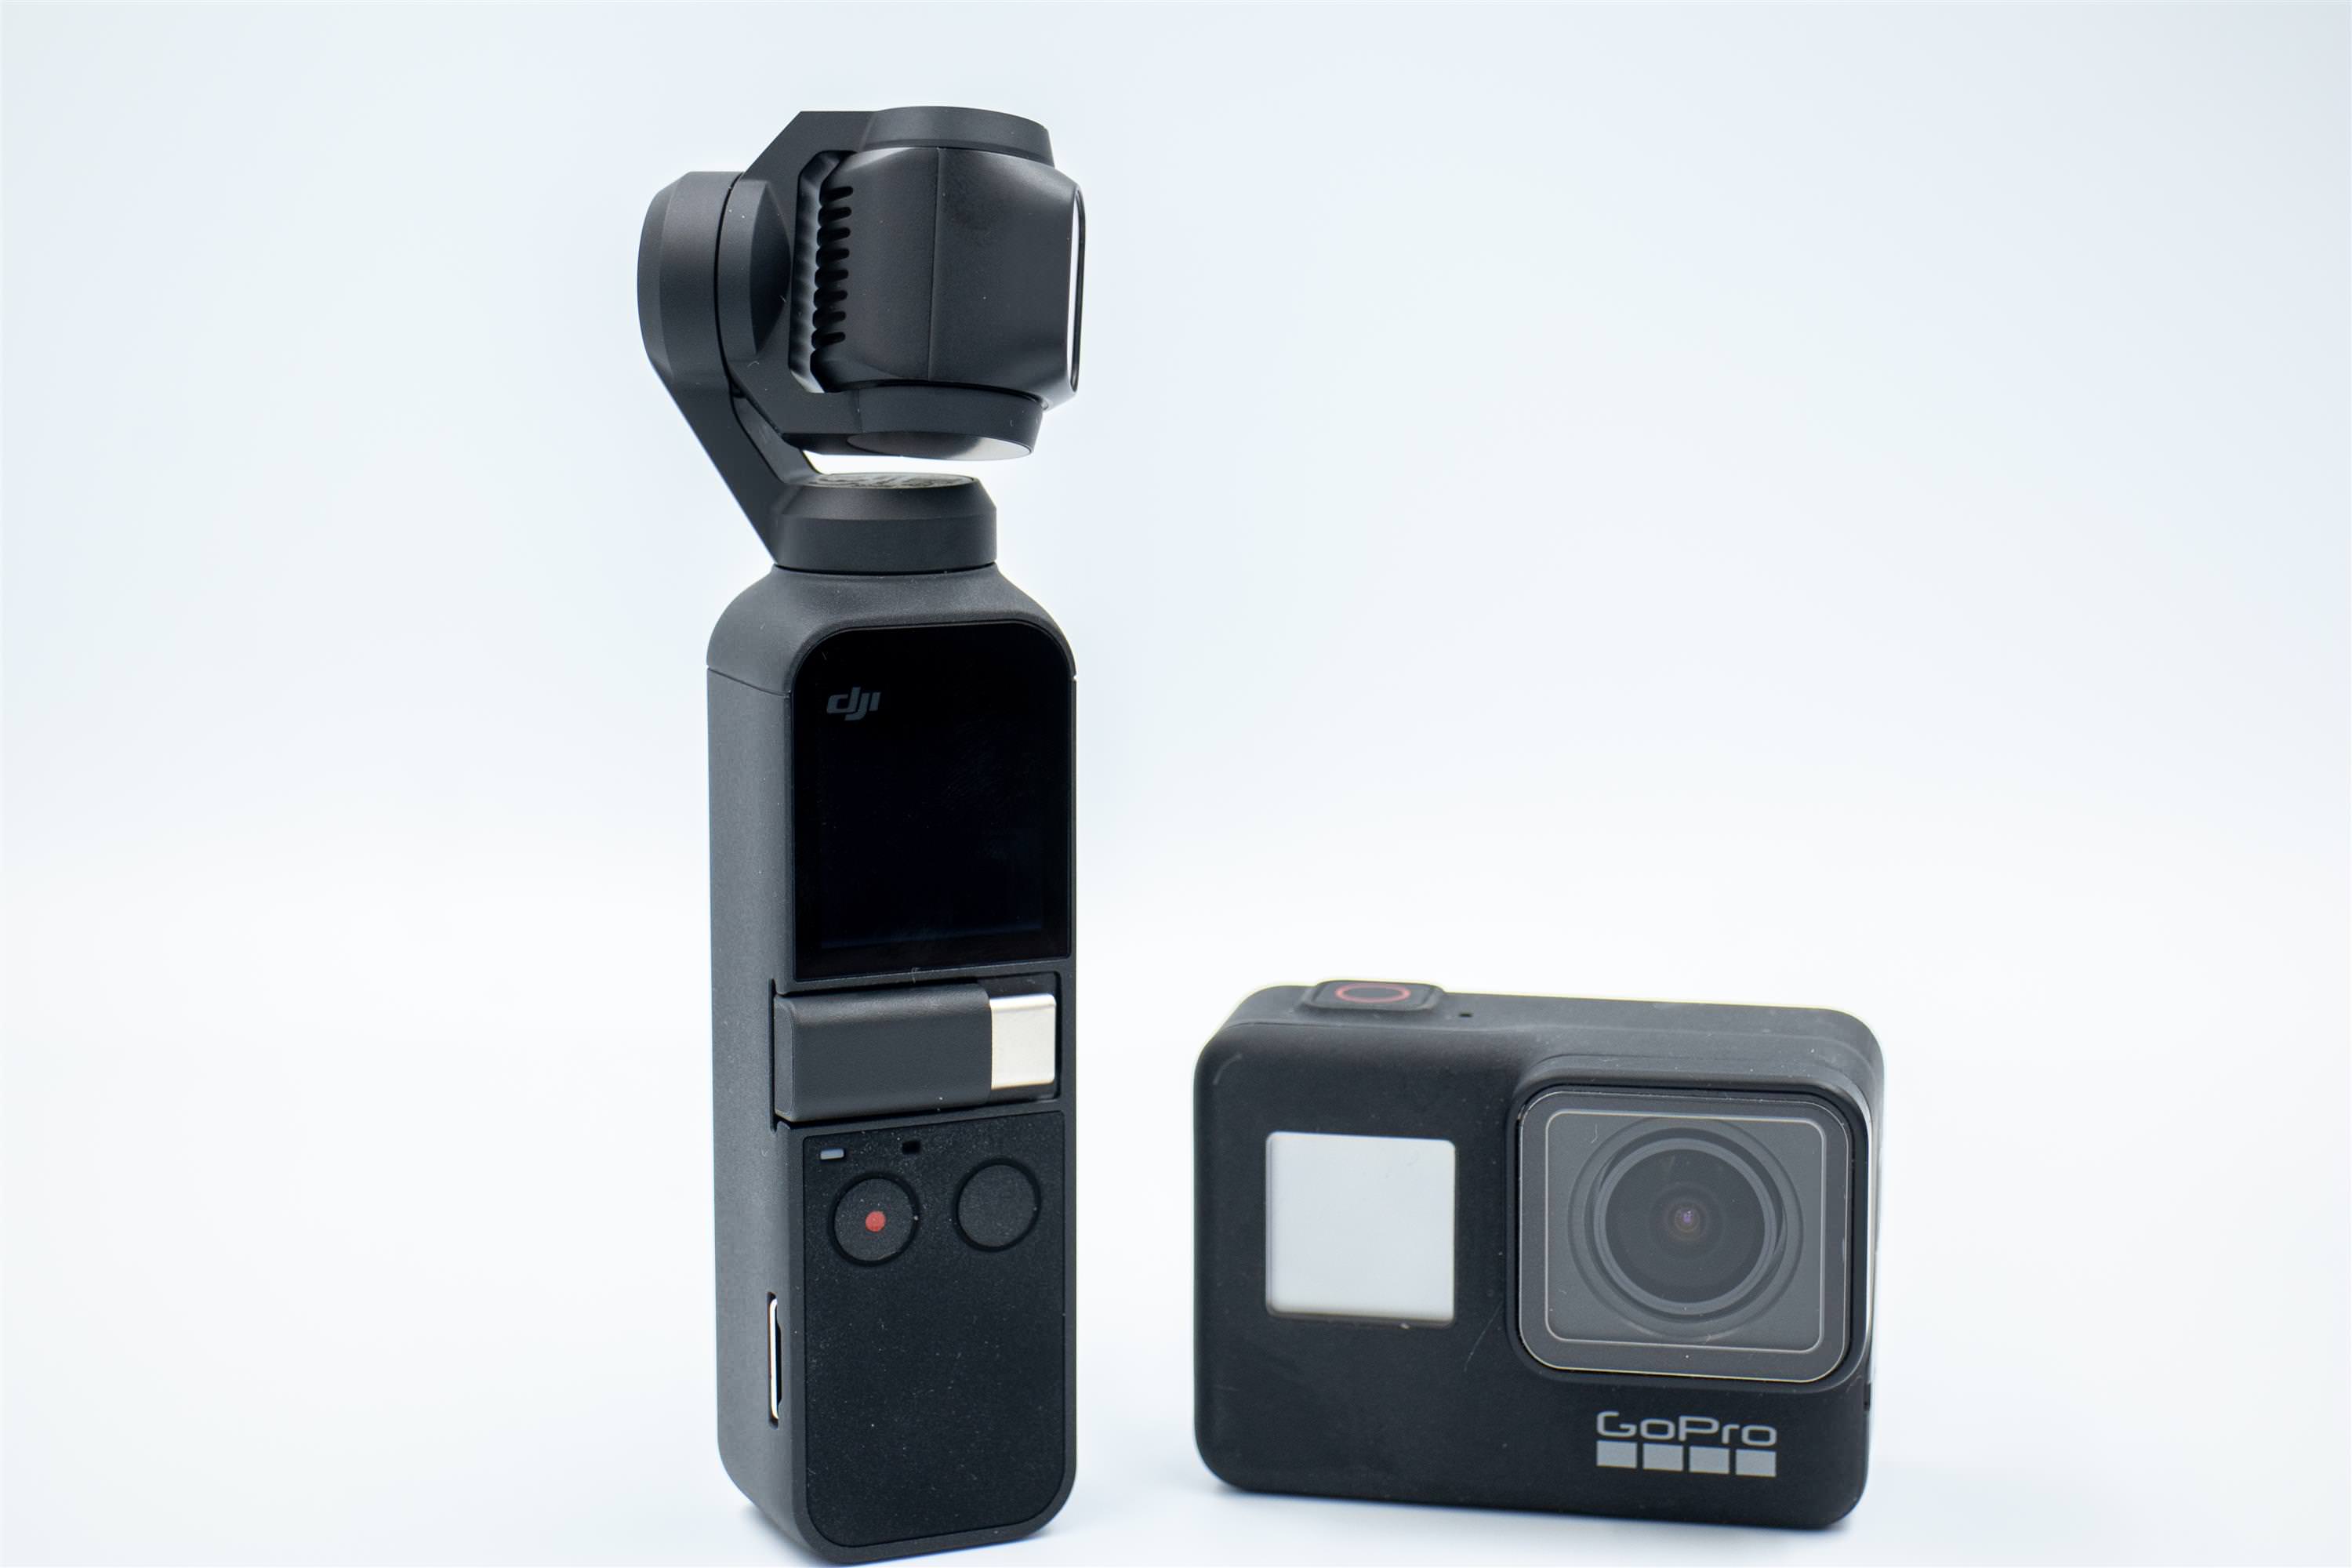 [比攝影99] OSMO Pocket 與 GoPro 7 比較 哪台好? 視野、防震、收音、畫質等 4 大評比